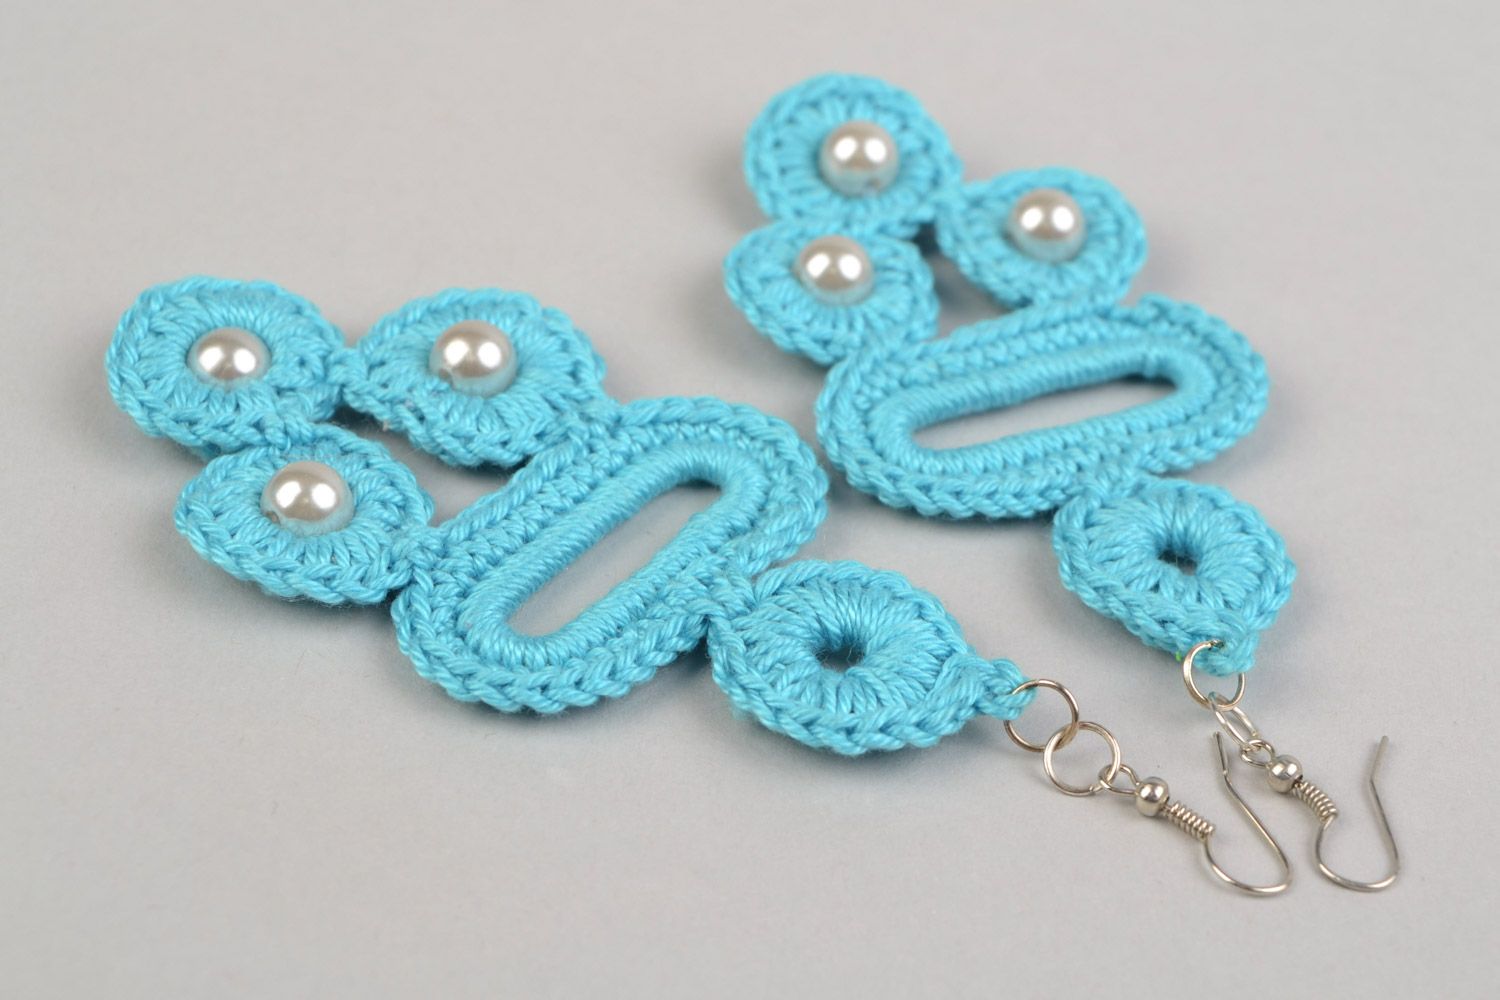 Textil Schmuckset 2 Stück Ohrringe und Armband aus Fäden geflochten in Blau handmade foto 5